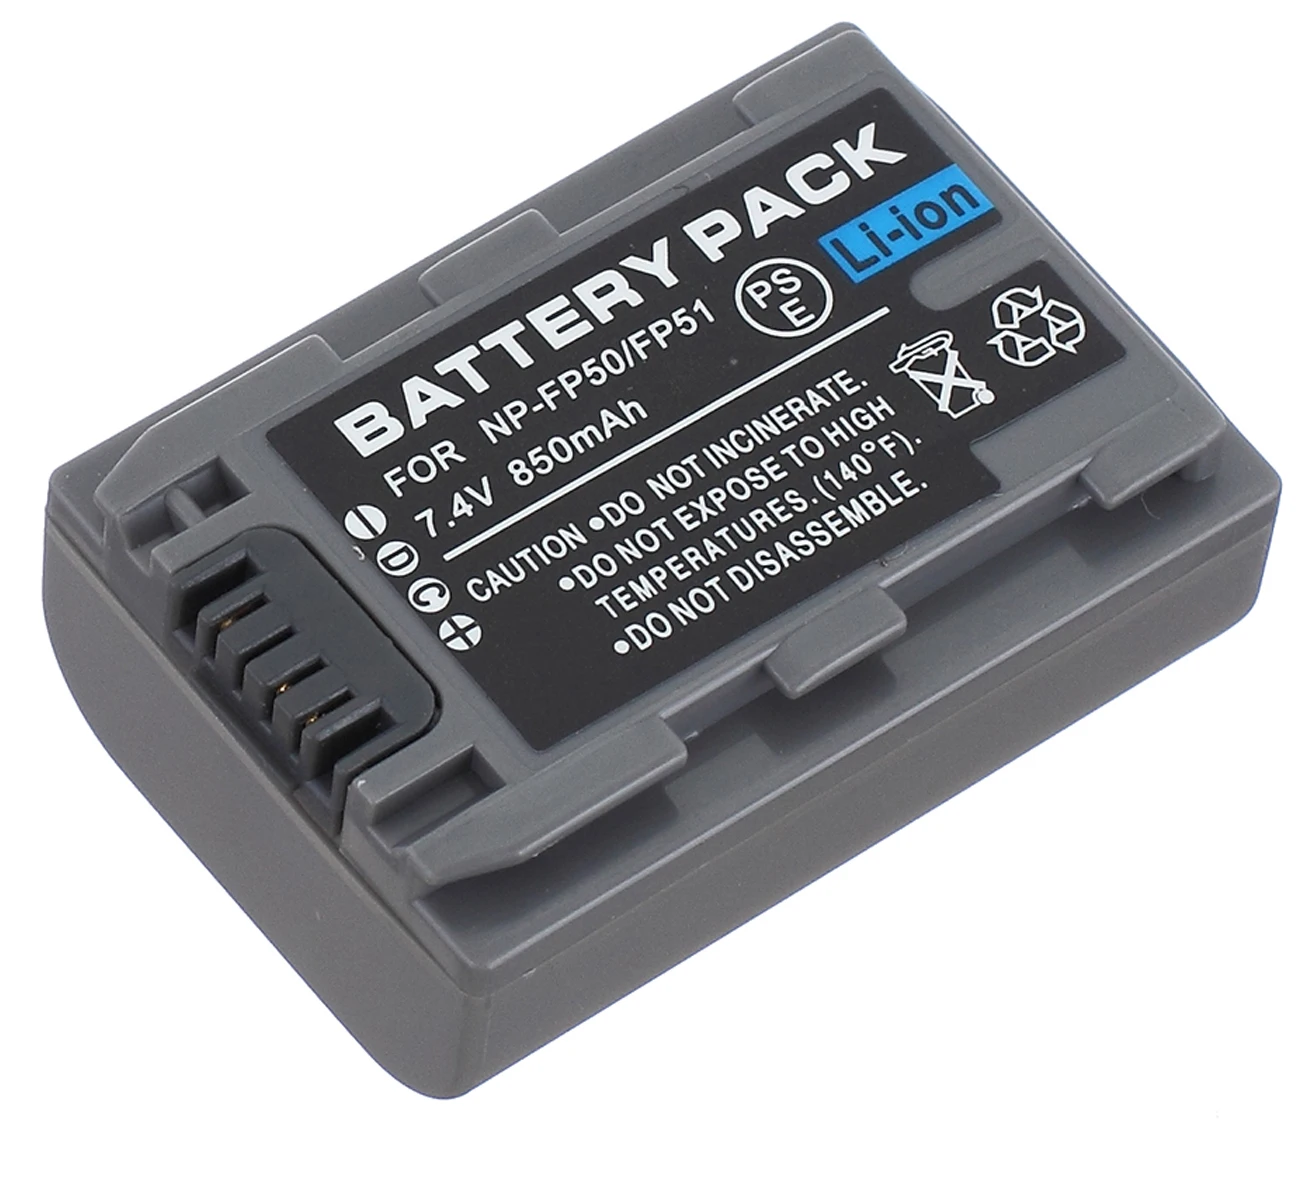 

Battery Pack for Sony DCR-HC20, DCR-HC21, DCR-HC22, DCR-HC23, DCR-HC24, DCR-HC26, DCR-HC27, DCR-HC28 Handycam Camcorder